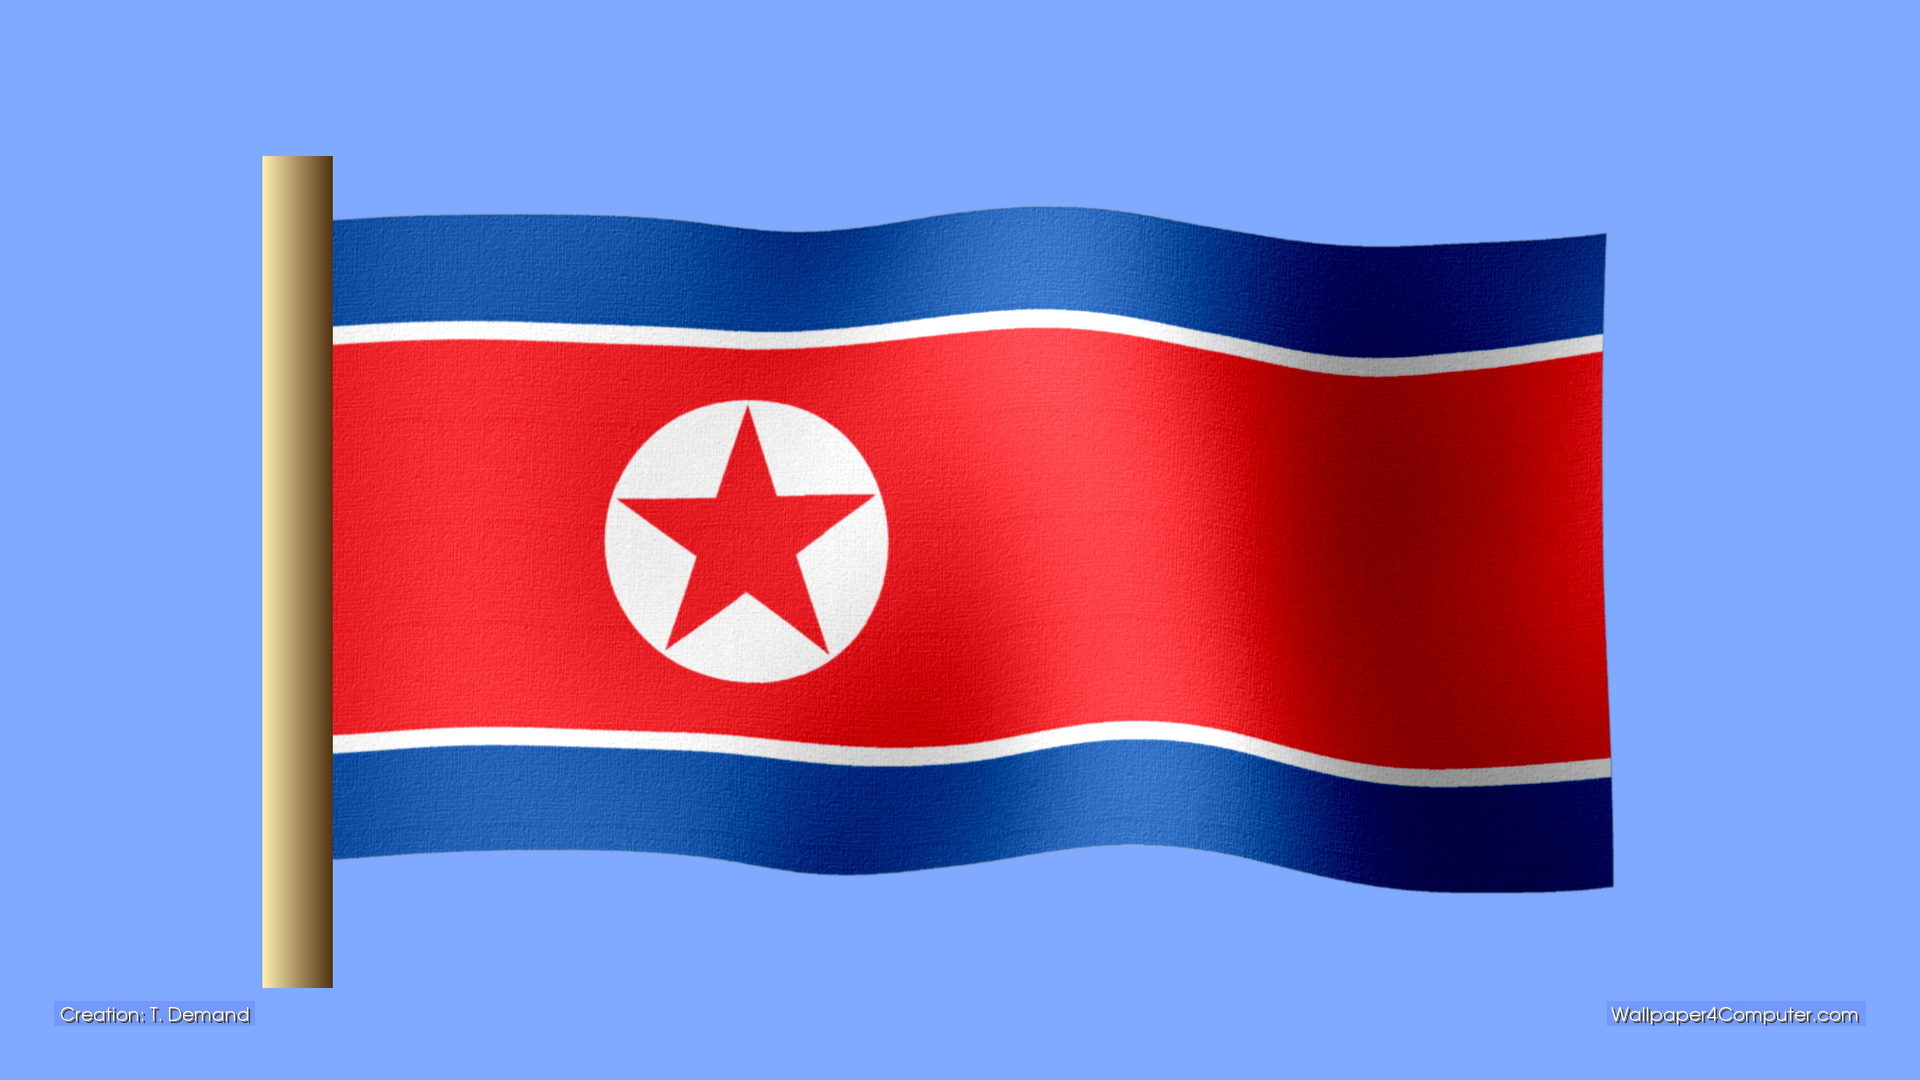 1920x1080 Wallpaper for Computer - North Korean flag desktop wallpaper - 1920 x 1080  pixels